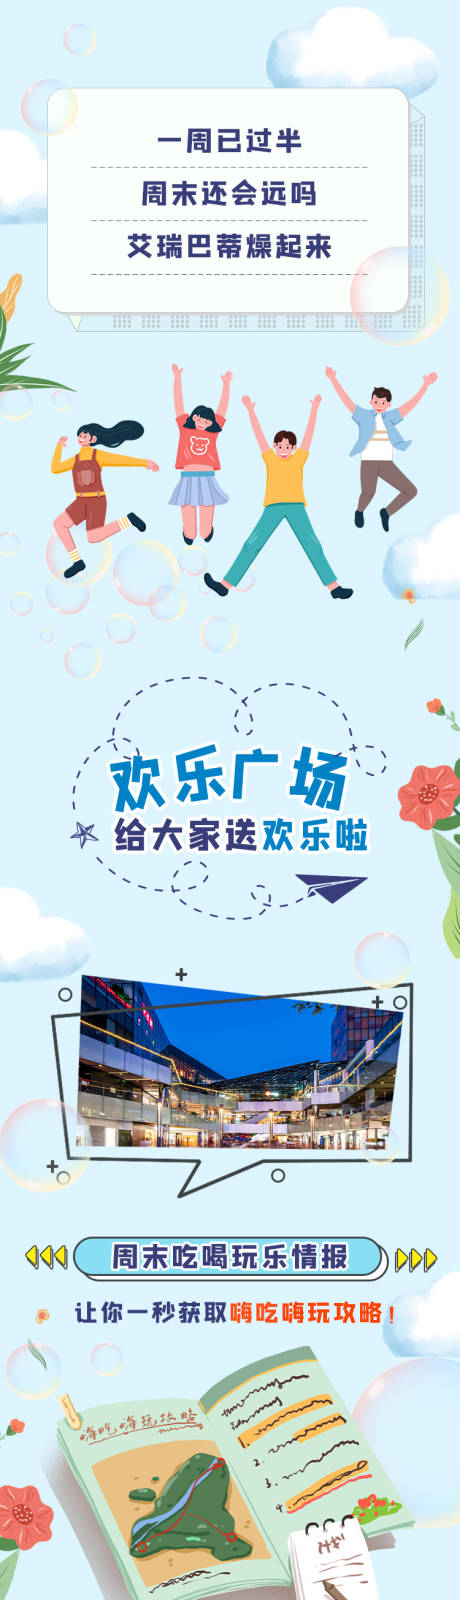 夏日泡泡商业地产促销宣传海报长图